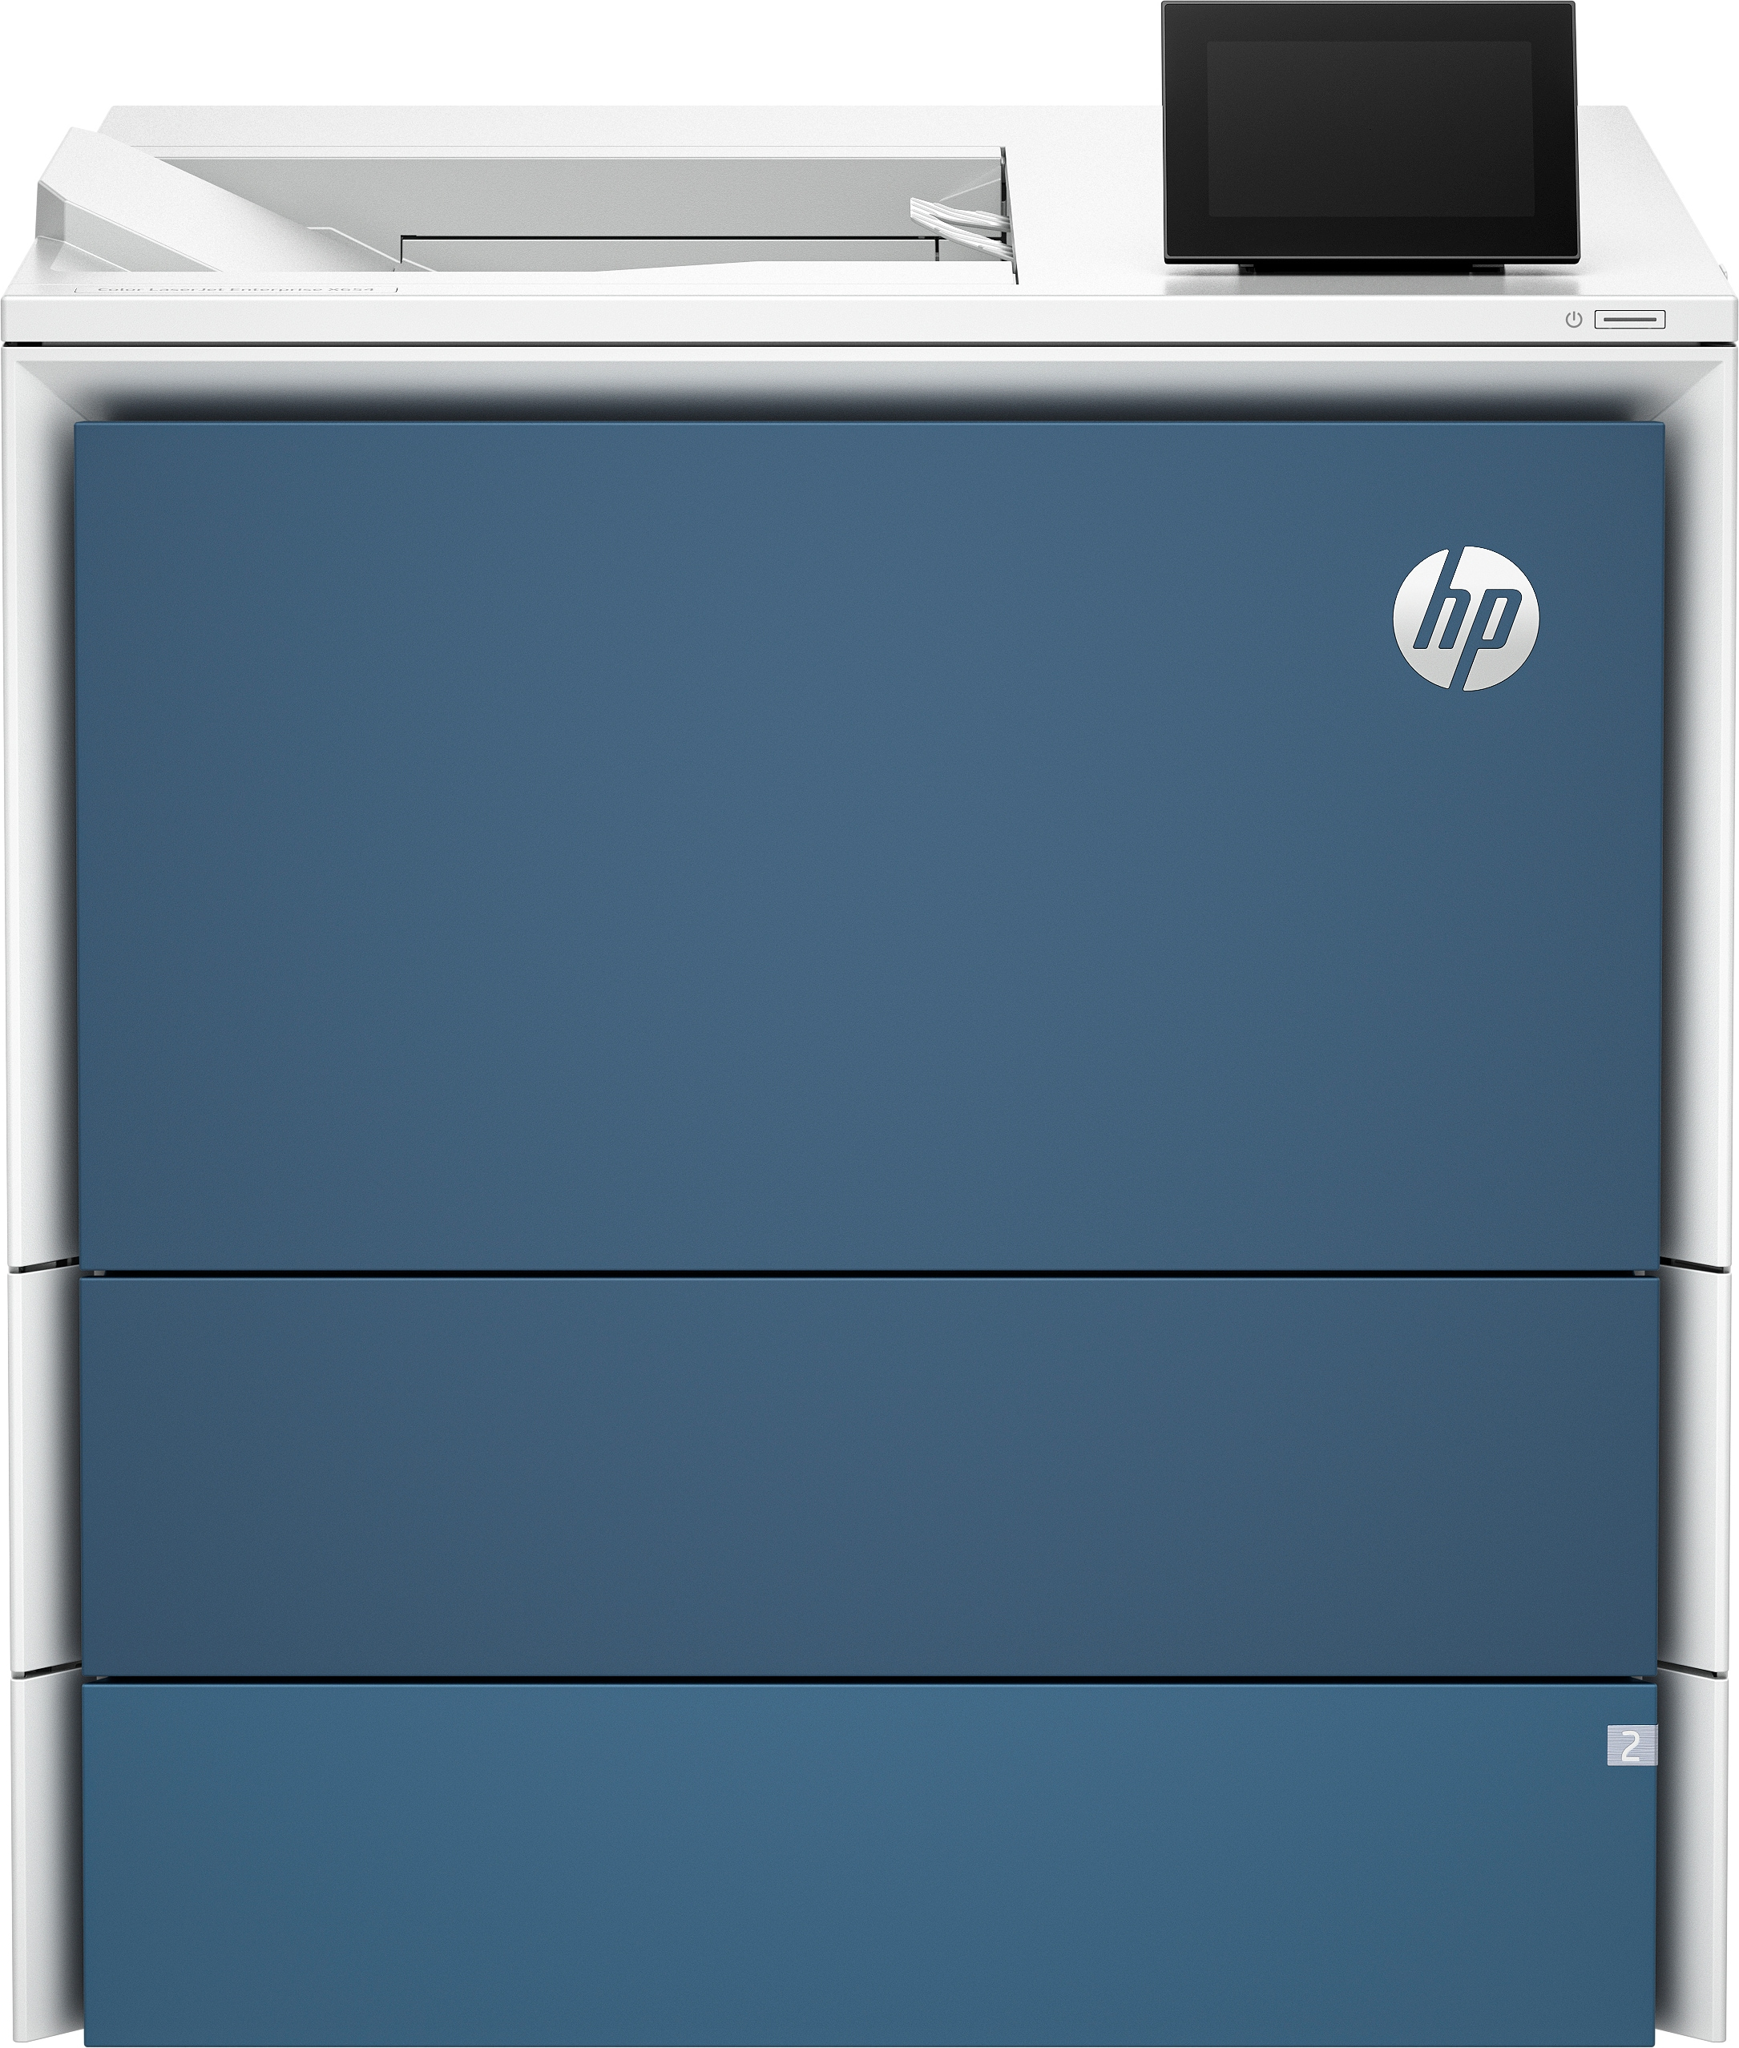 Bild von HP Color LaserJet Enterprise X654dn Drucker - Drucken - USB-Flash-Laufwerkanschluss (vorne); Optionale Fächer mit hoher Kapazität; Touchscreen; Tonerkartusche mit TerraJet - Laser - Farbe - 1200 x 1200 DPI - A4 - 52 Seiten pro Minute - Doppelseitiger Druck